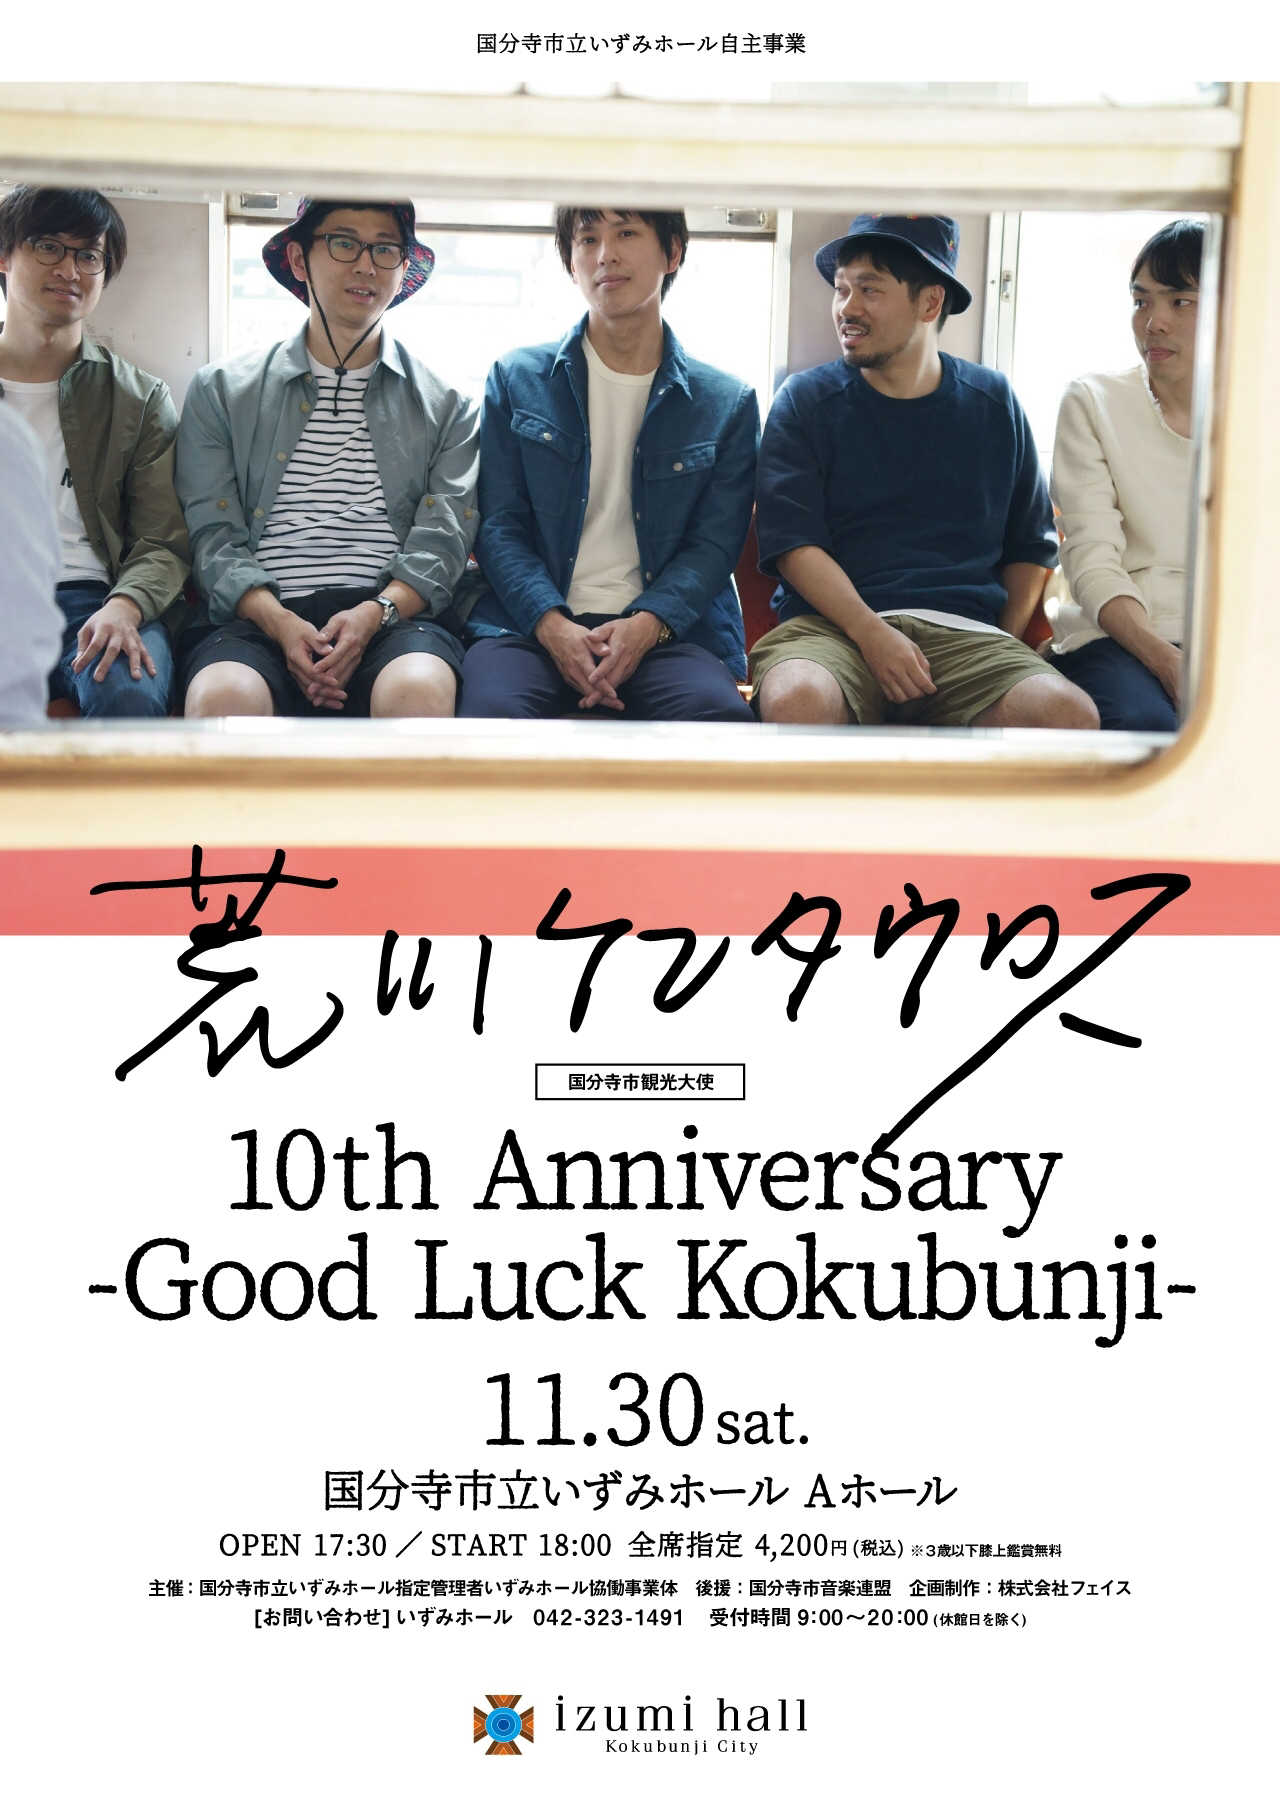 『荒川ケンタウロス 10th Anniversary - Good Luck Kokubunji -』